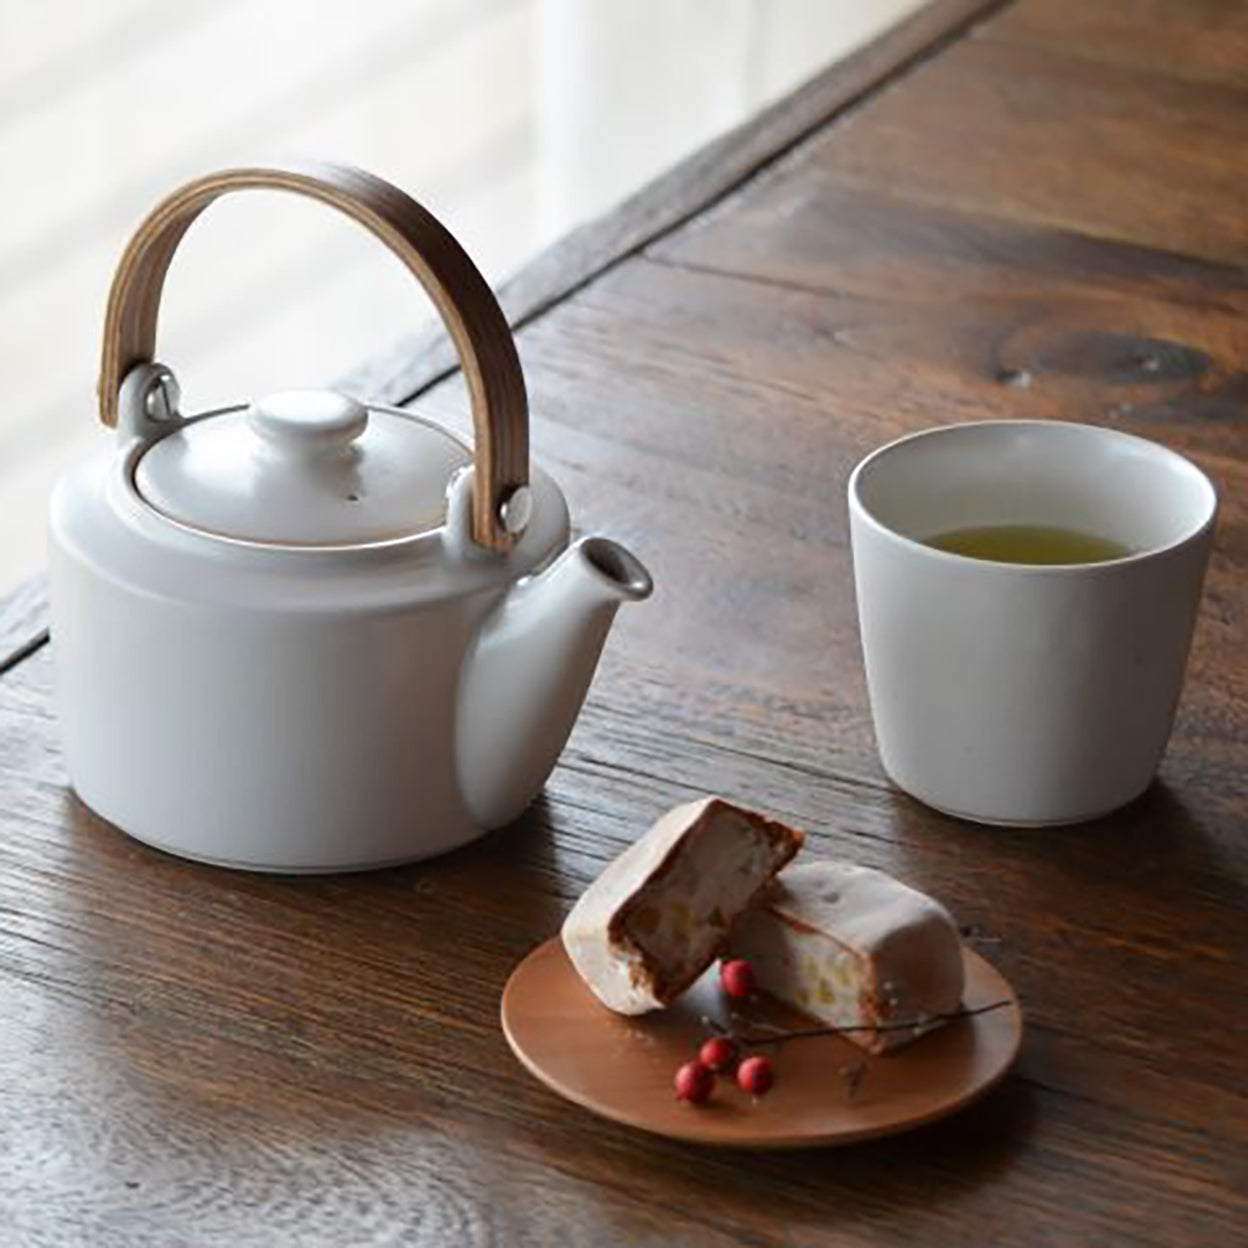 SYO teapot and teacup set